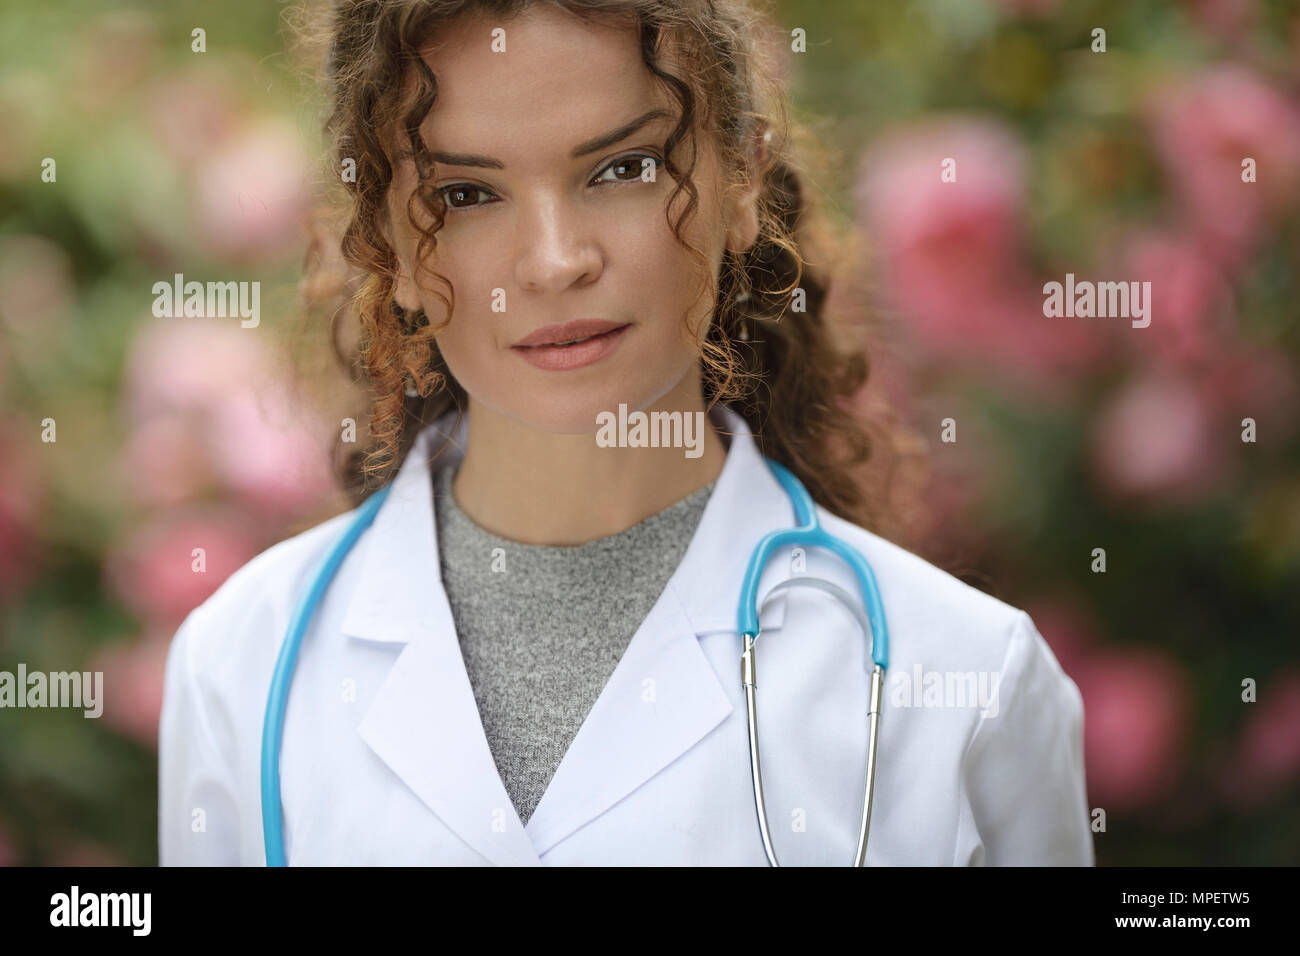 Porträt einer jungen Frau, Arzt, Arzt, Arzt, Arzt tragen Laborkittel im Außenbereich Einstellungen mit blosso Stockfoto